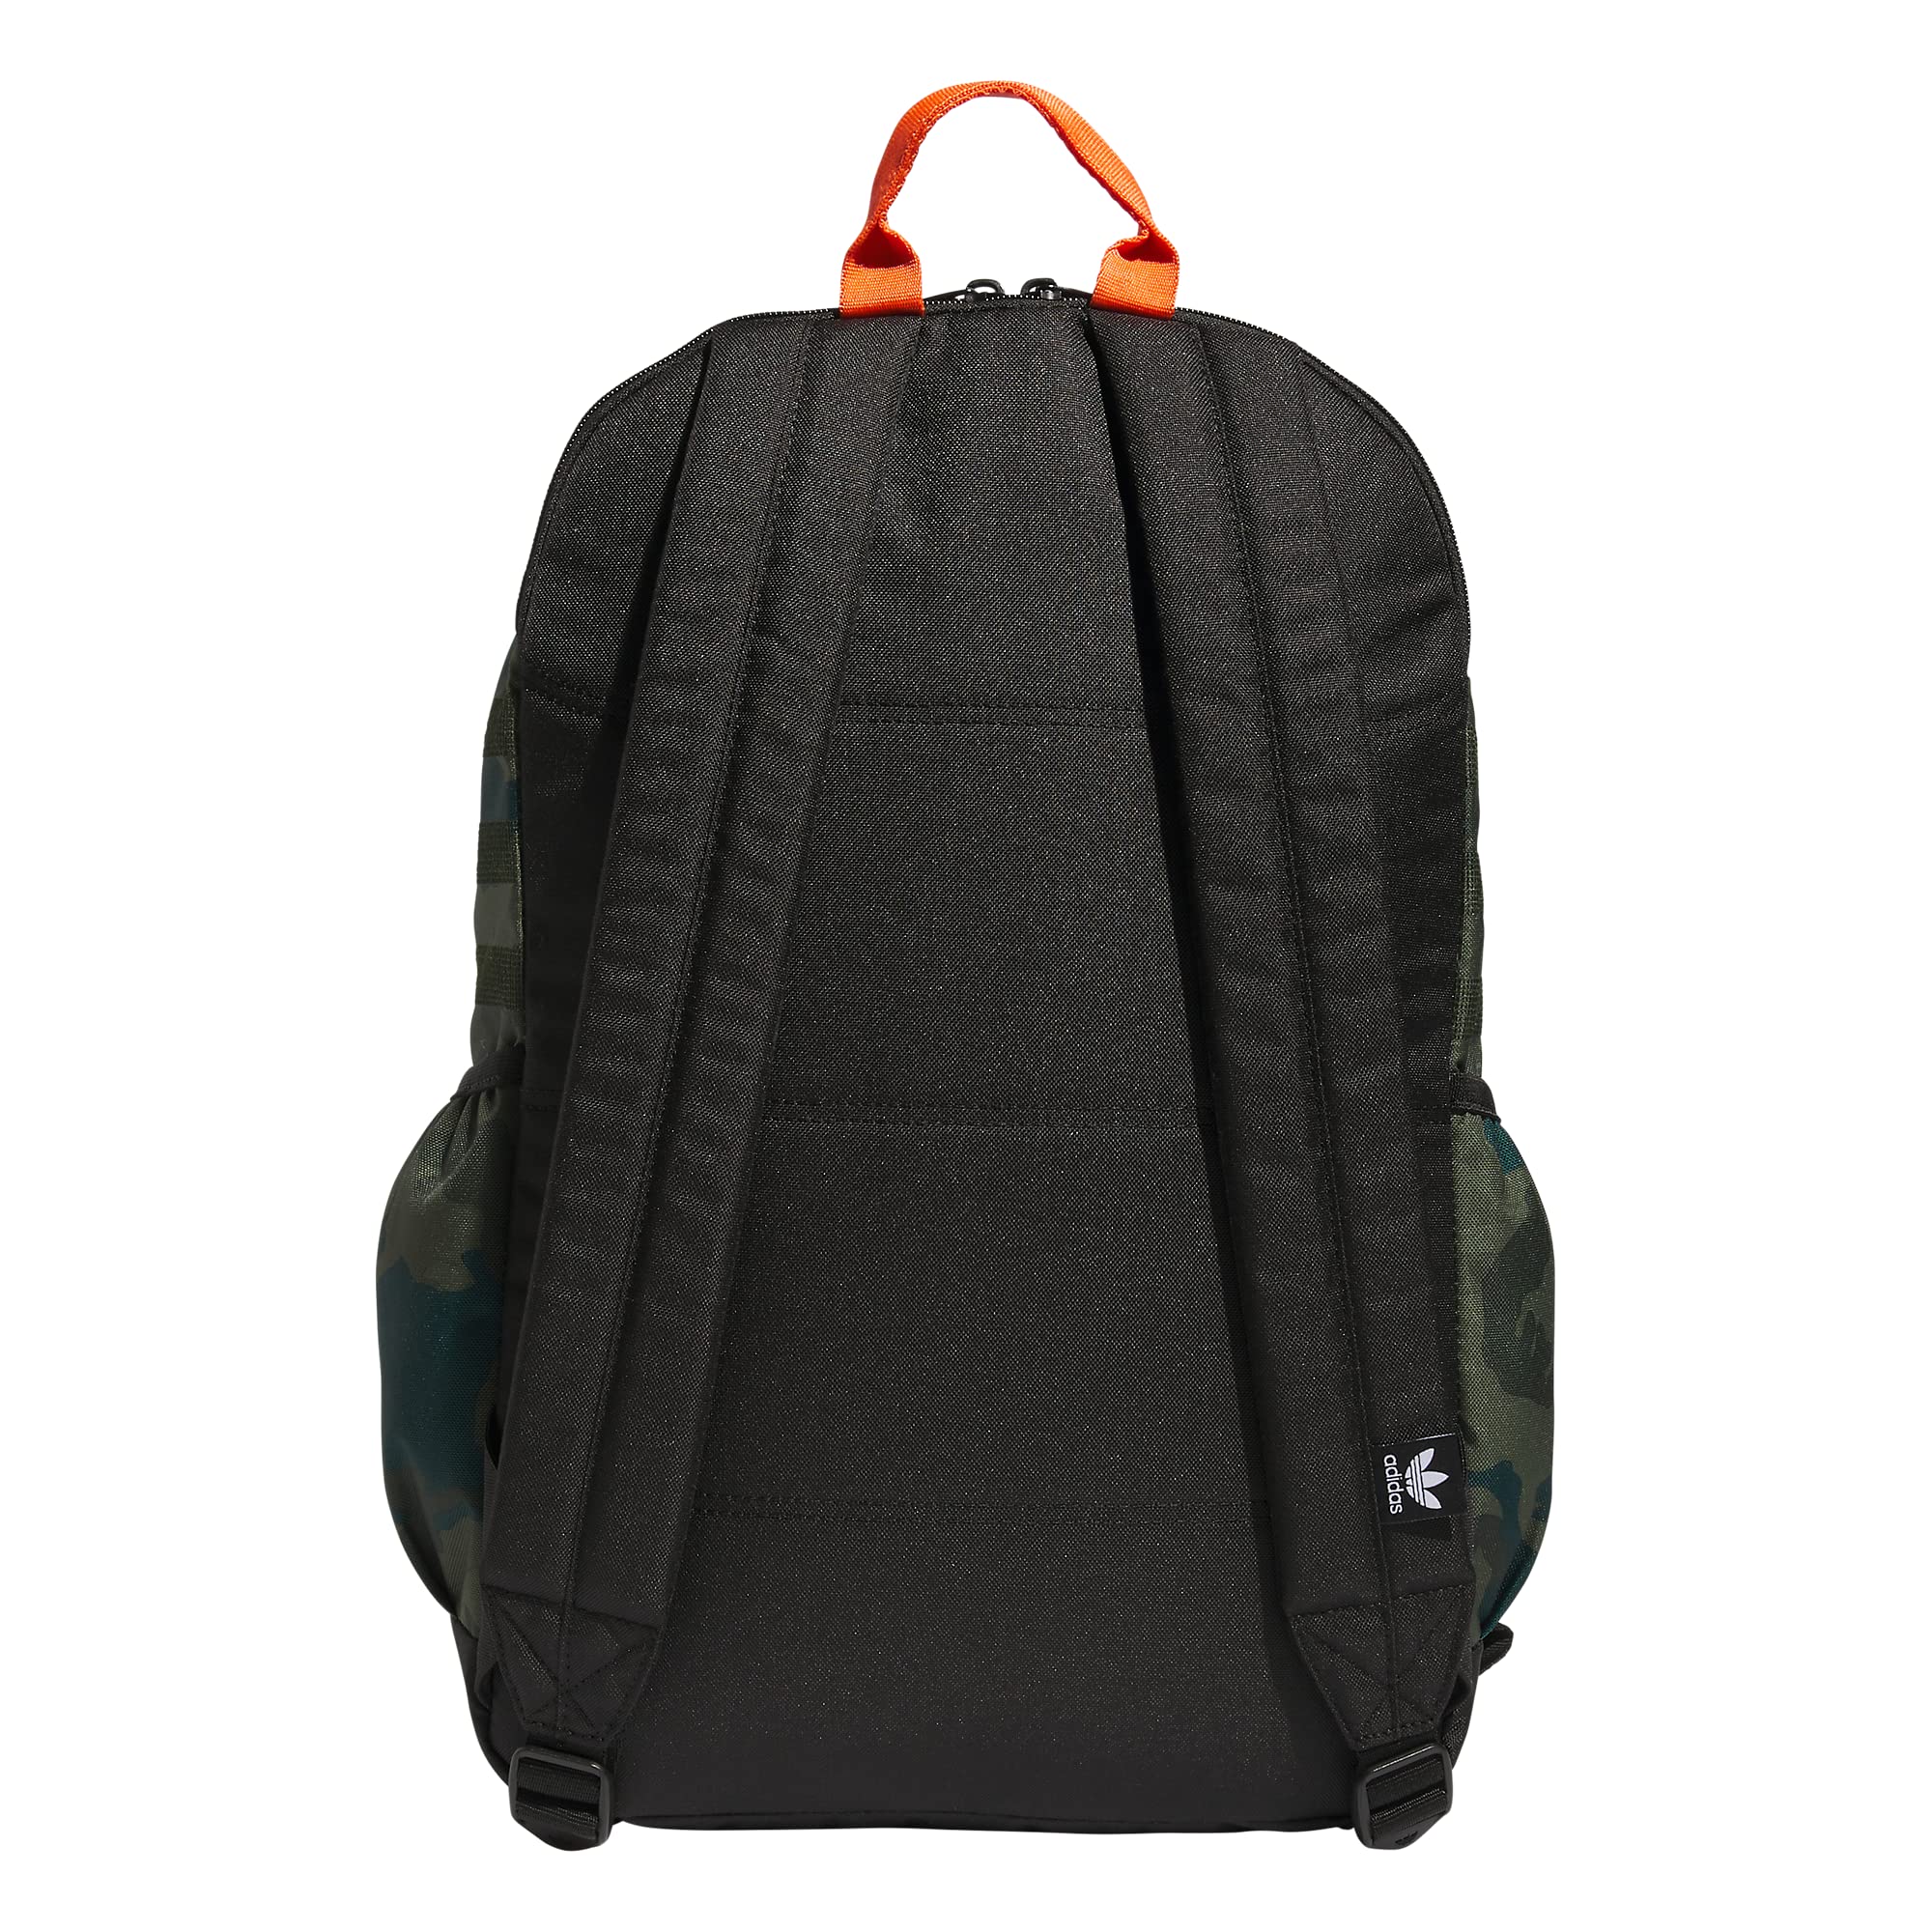 adidas Originals National 3.0 Backpack, Classic Camo Olive Cargo/Black/Impact Orange, One Size